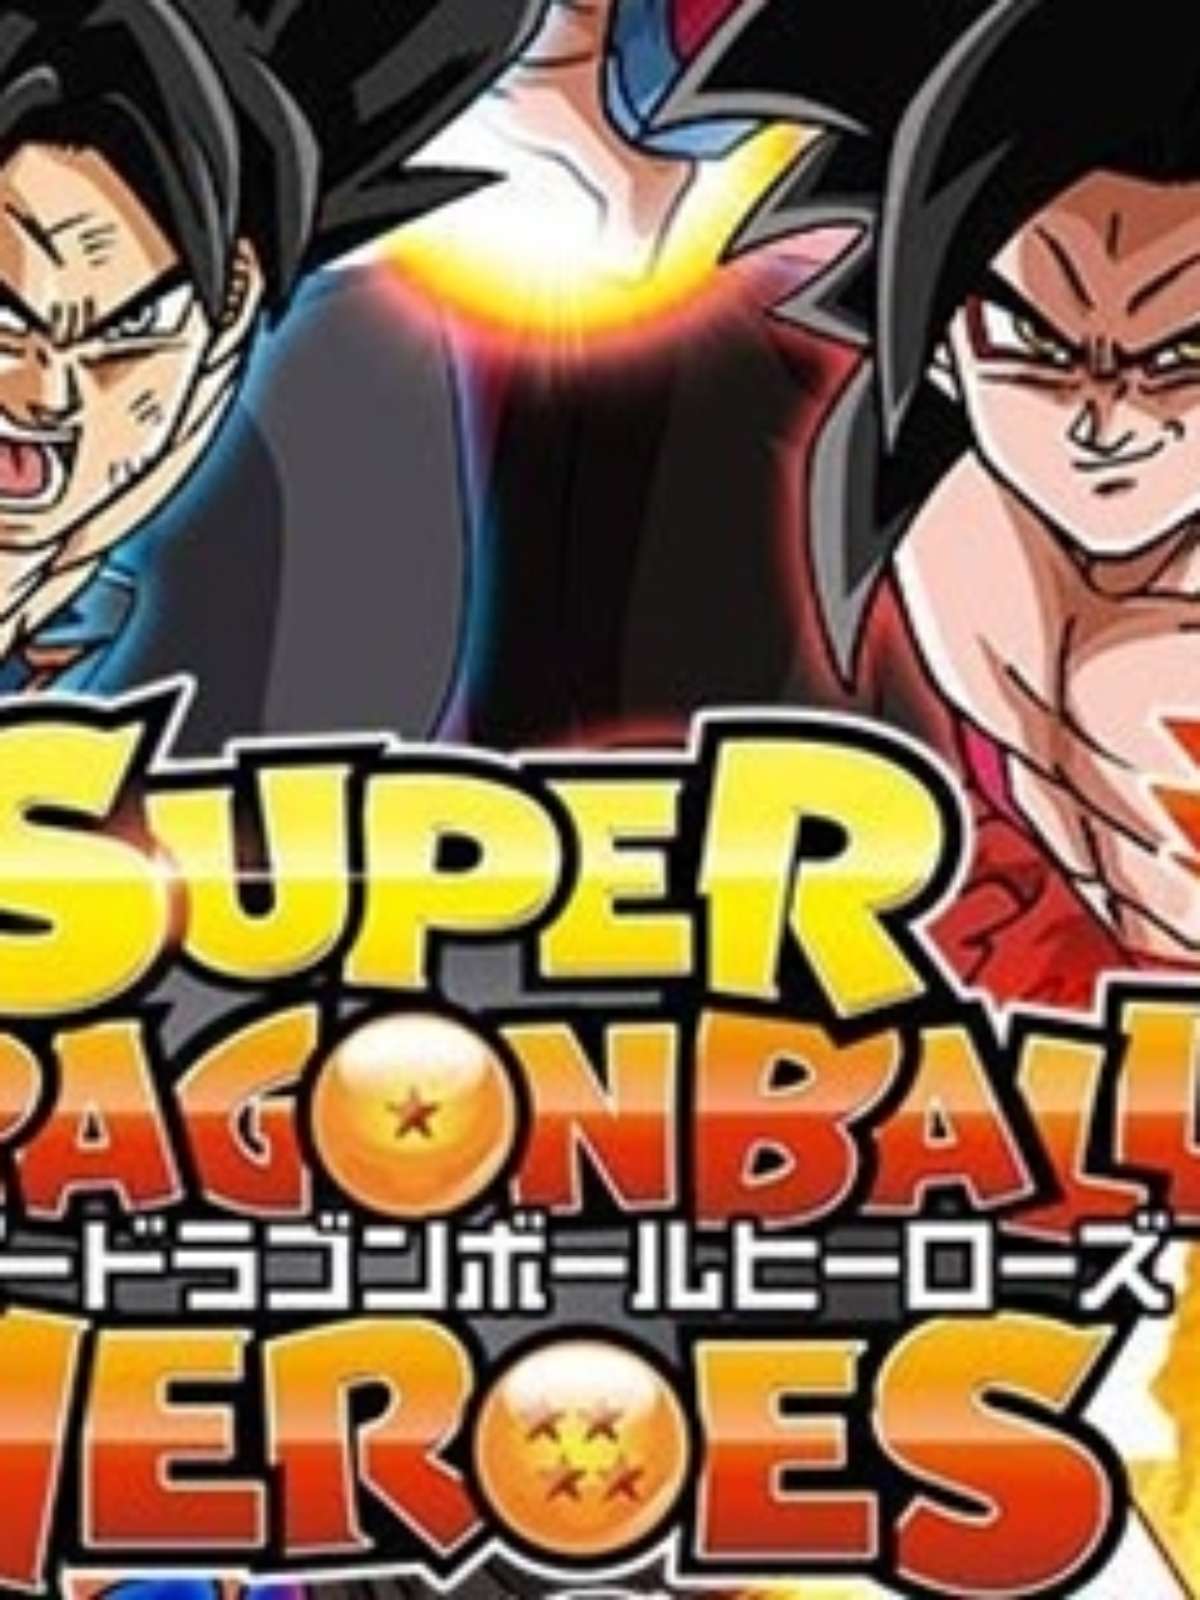 Dragon Ball Super - Série 2015 - AdoroCinema